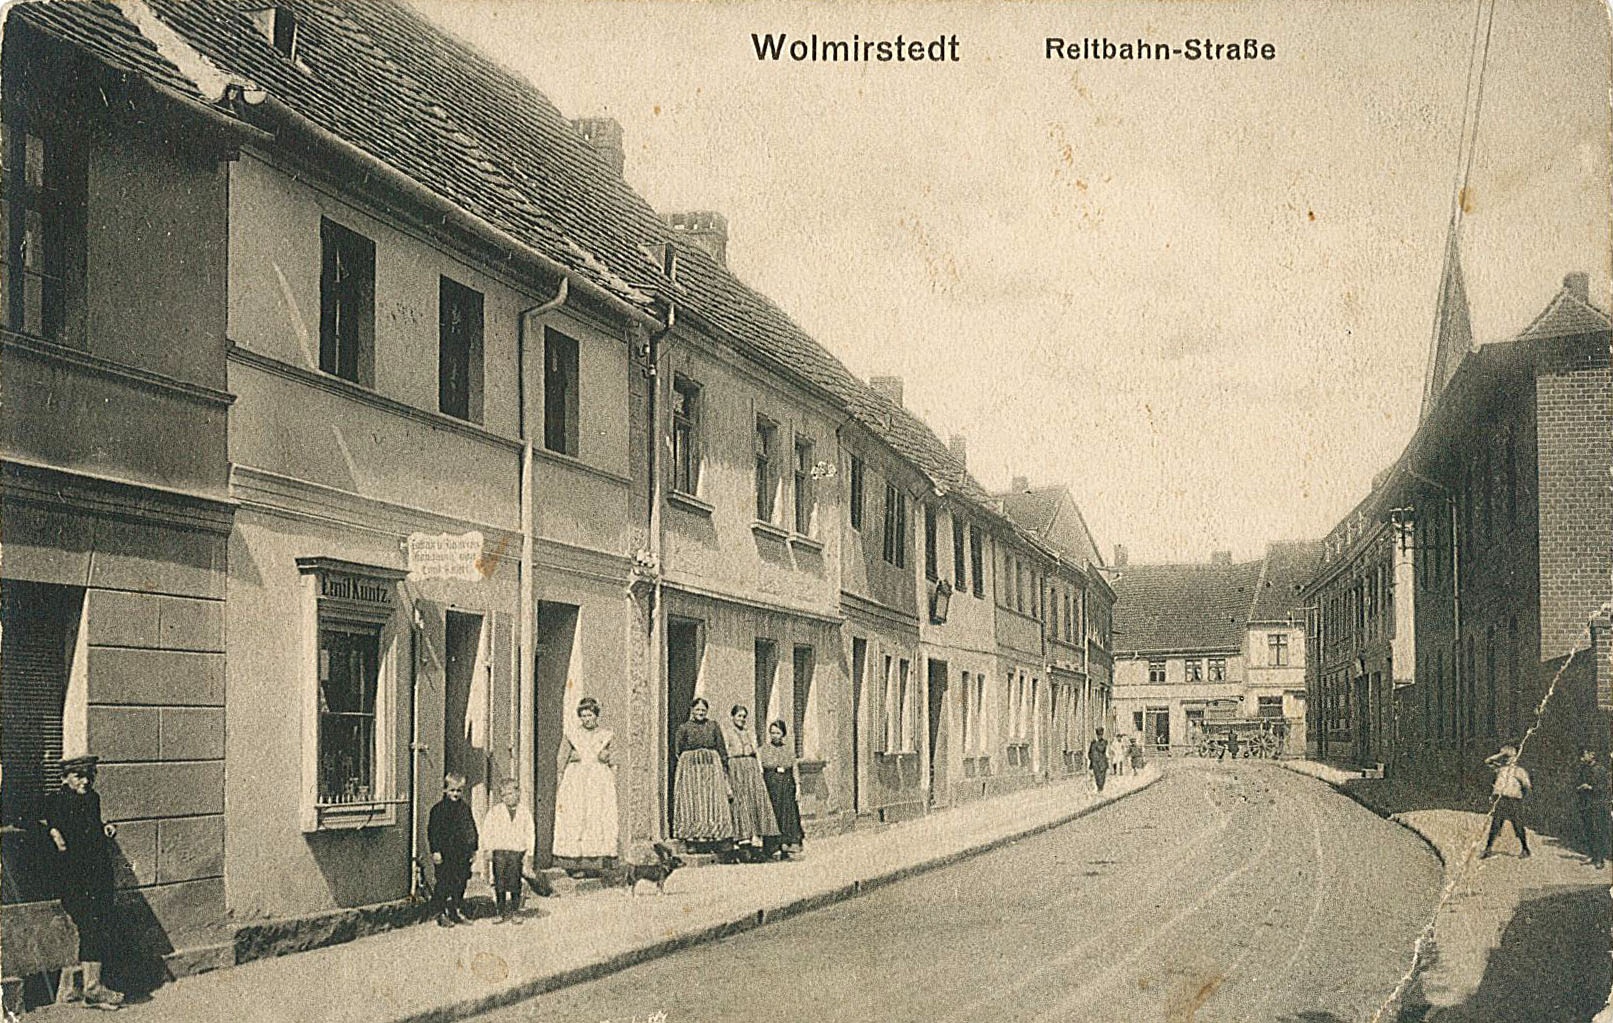 Ansichtskarte von Wolmirstedt, Motiv Reitbahn-Straße, Zigarrengeschäft von Emil Kuntz (Museum Wolmirstedt RR-F)